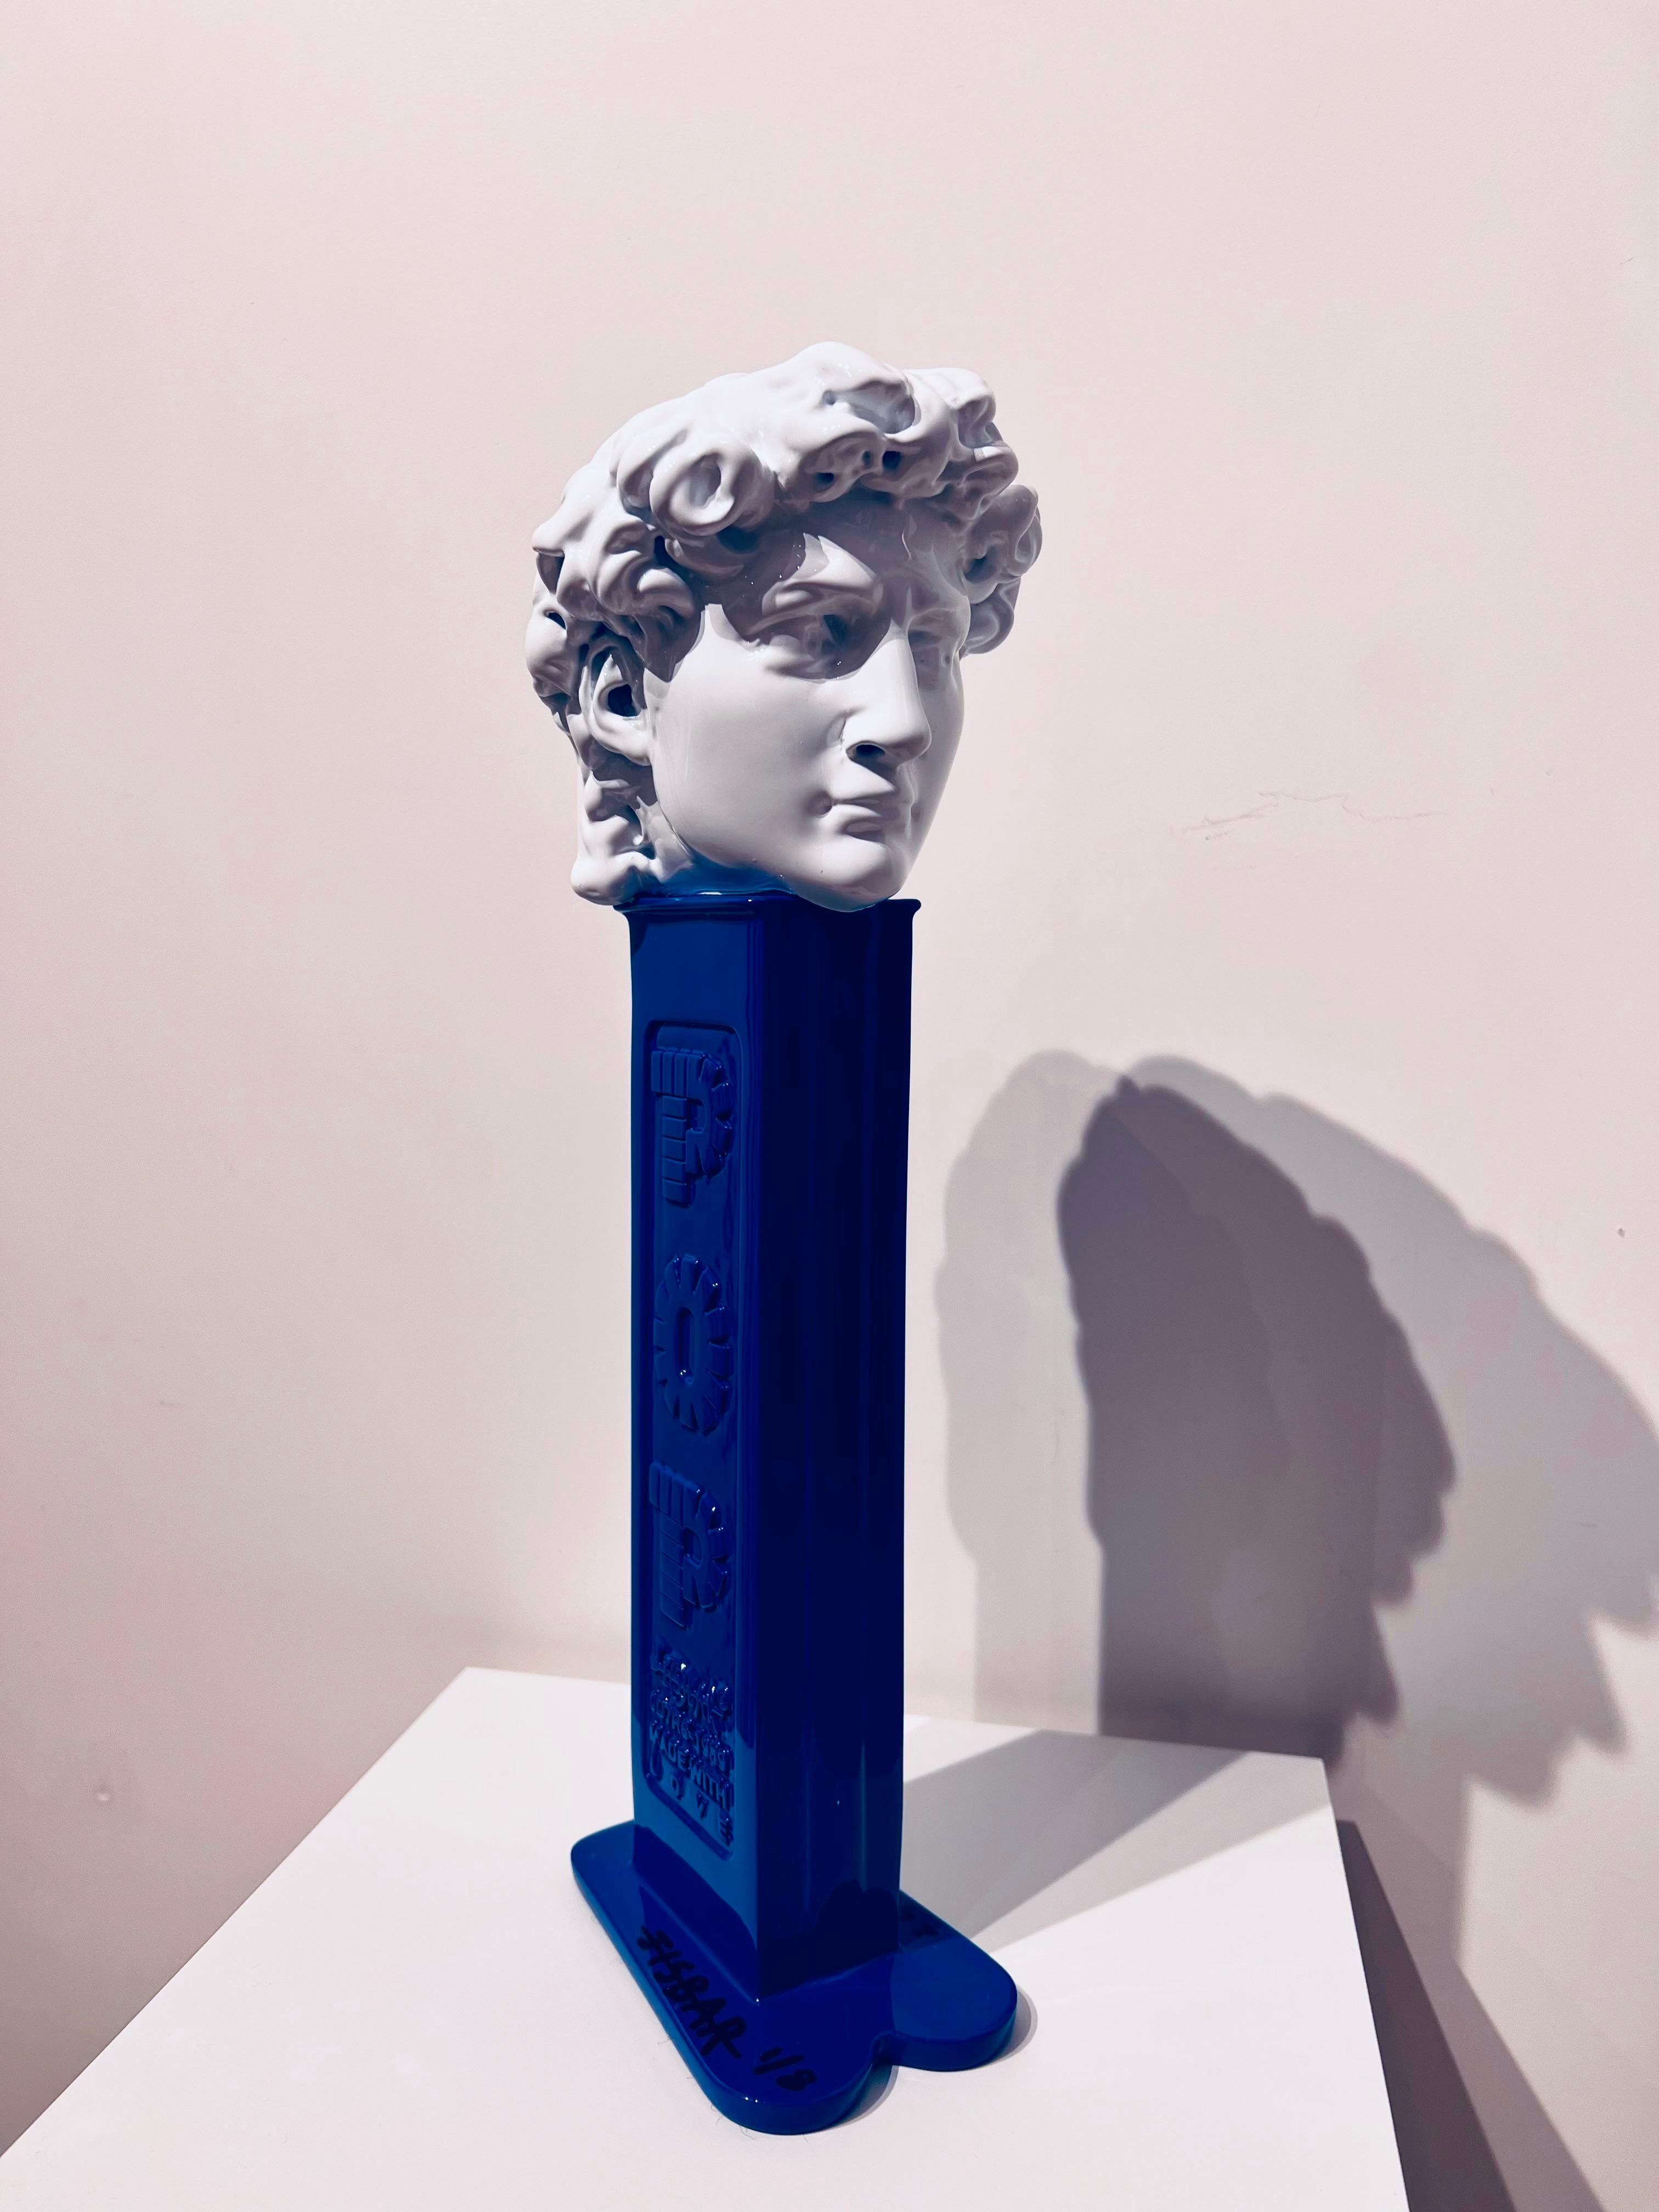 David Pez Bleu - Pop Art Sculpture by Jisbar